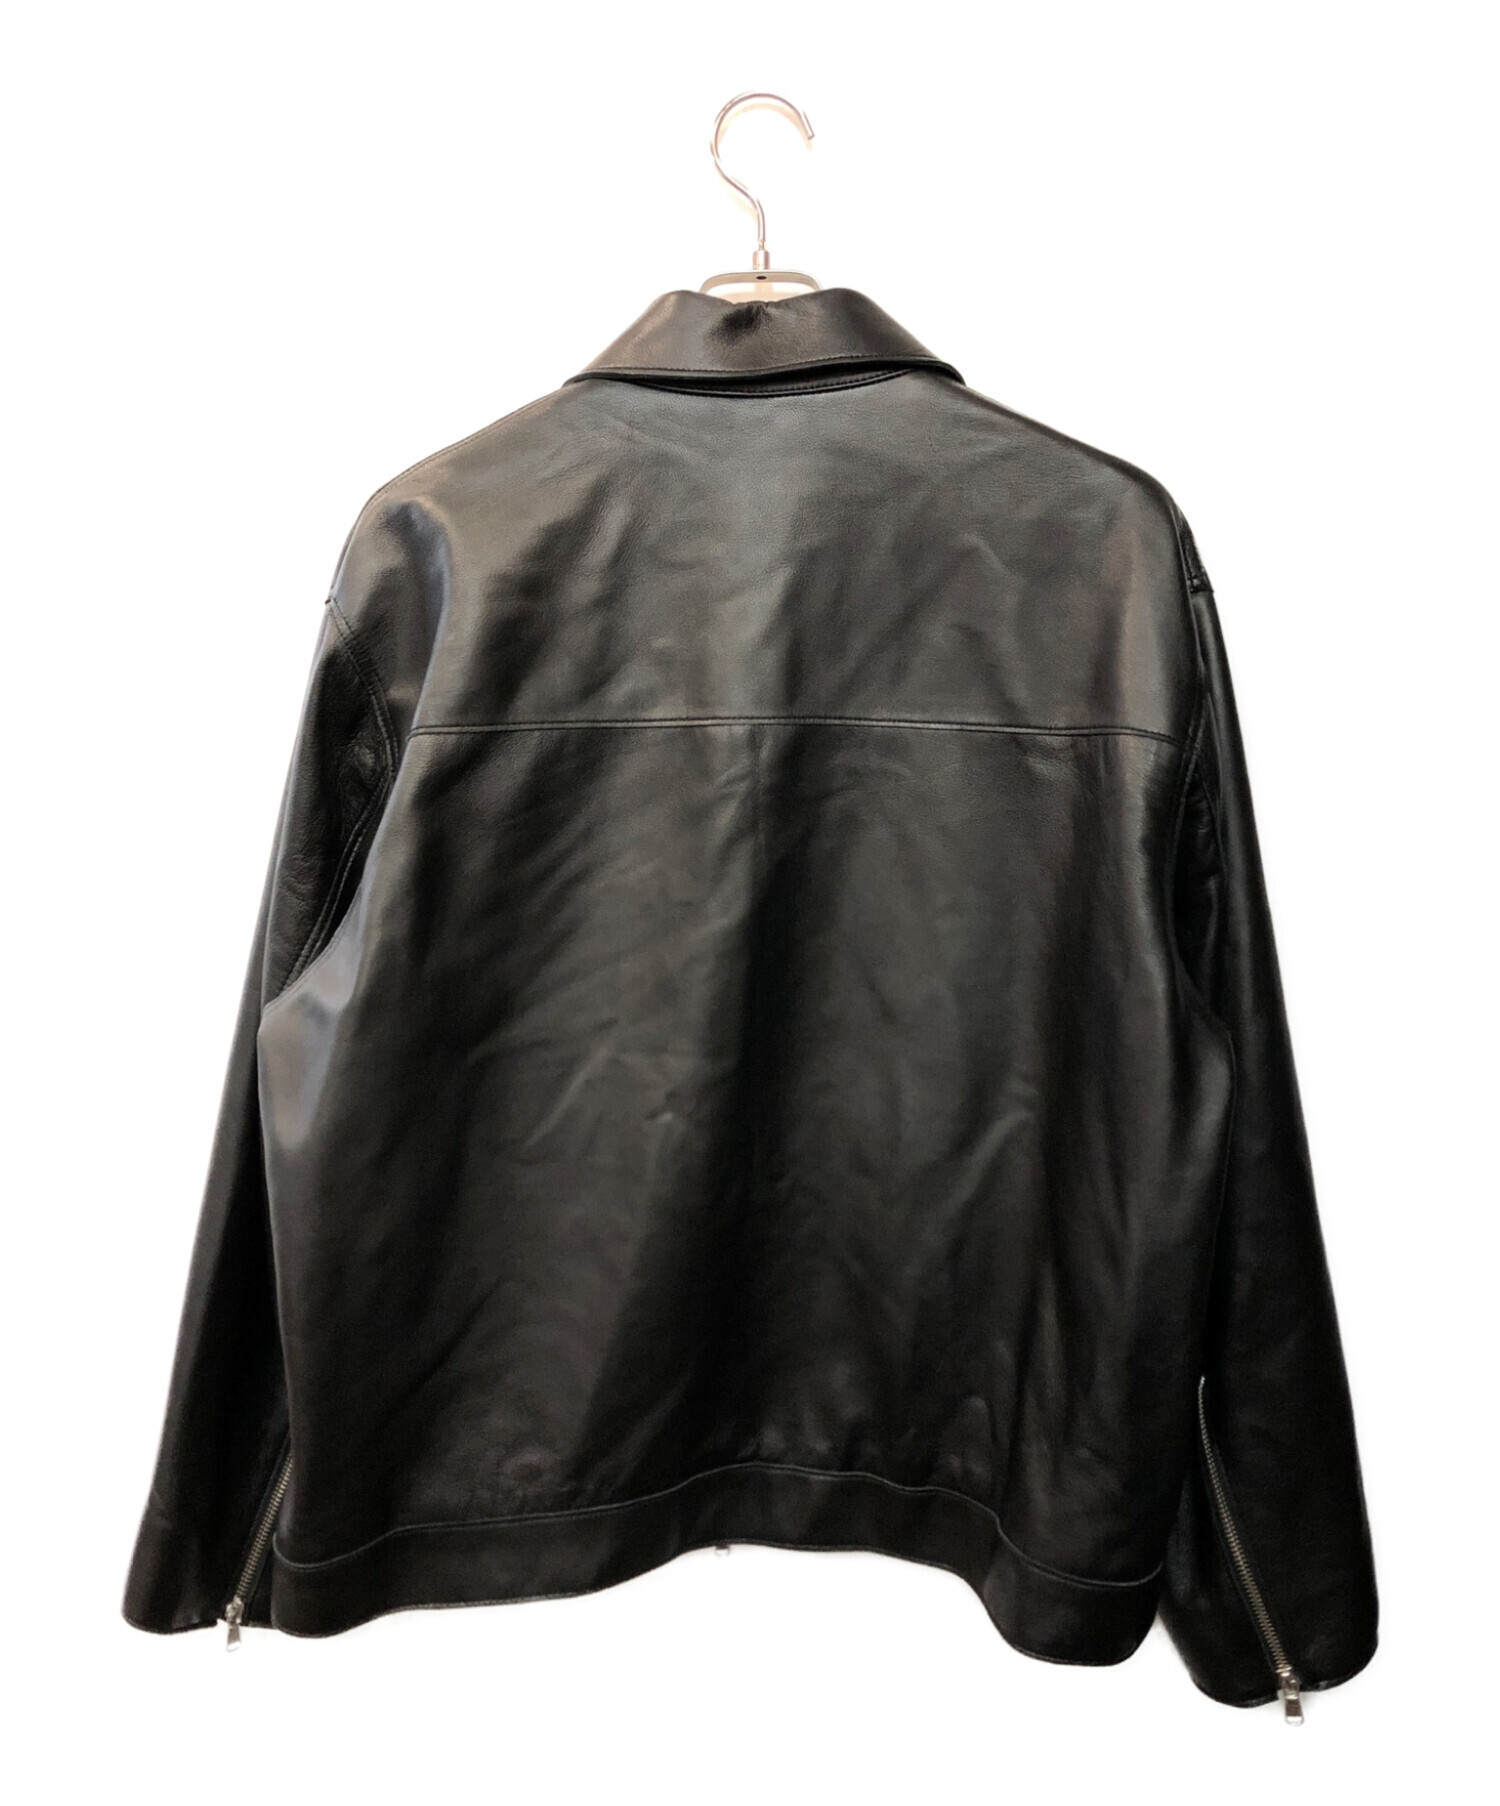 MAISON SPECIAL メゾンスペシャル ラムレザープライムオーバー襟付きシングルライダースジャケット ブラック サイズ: